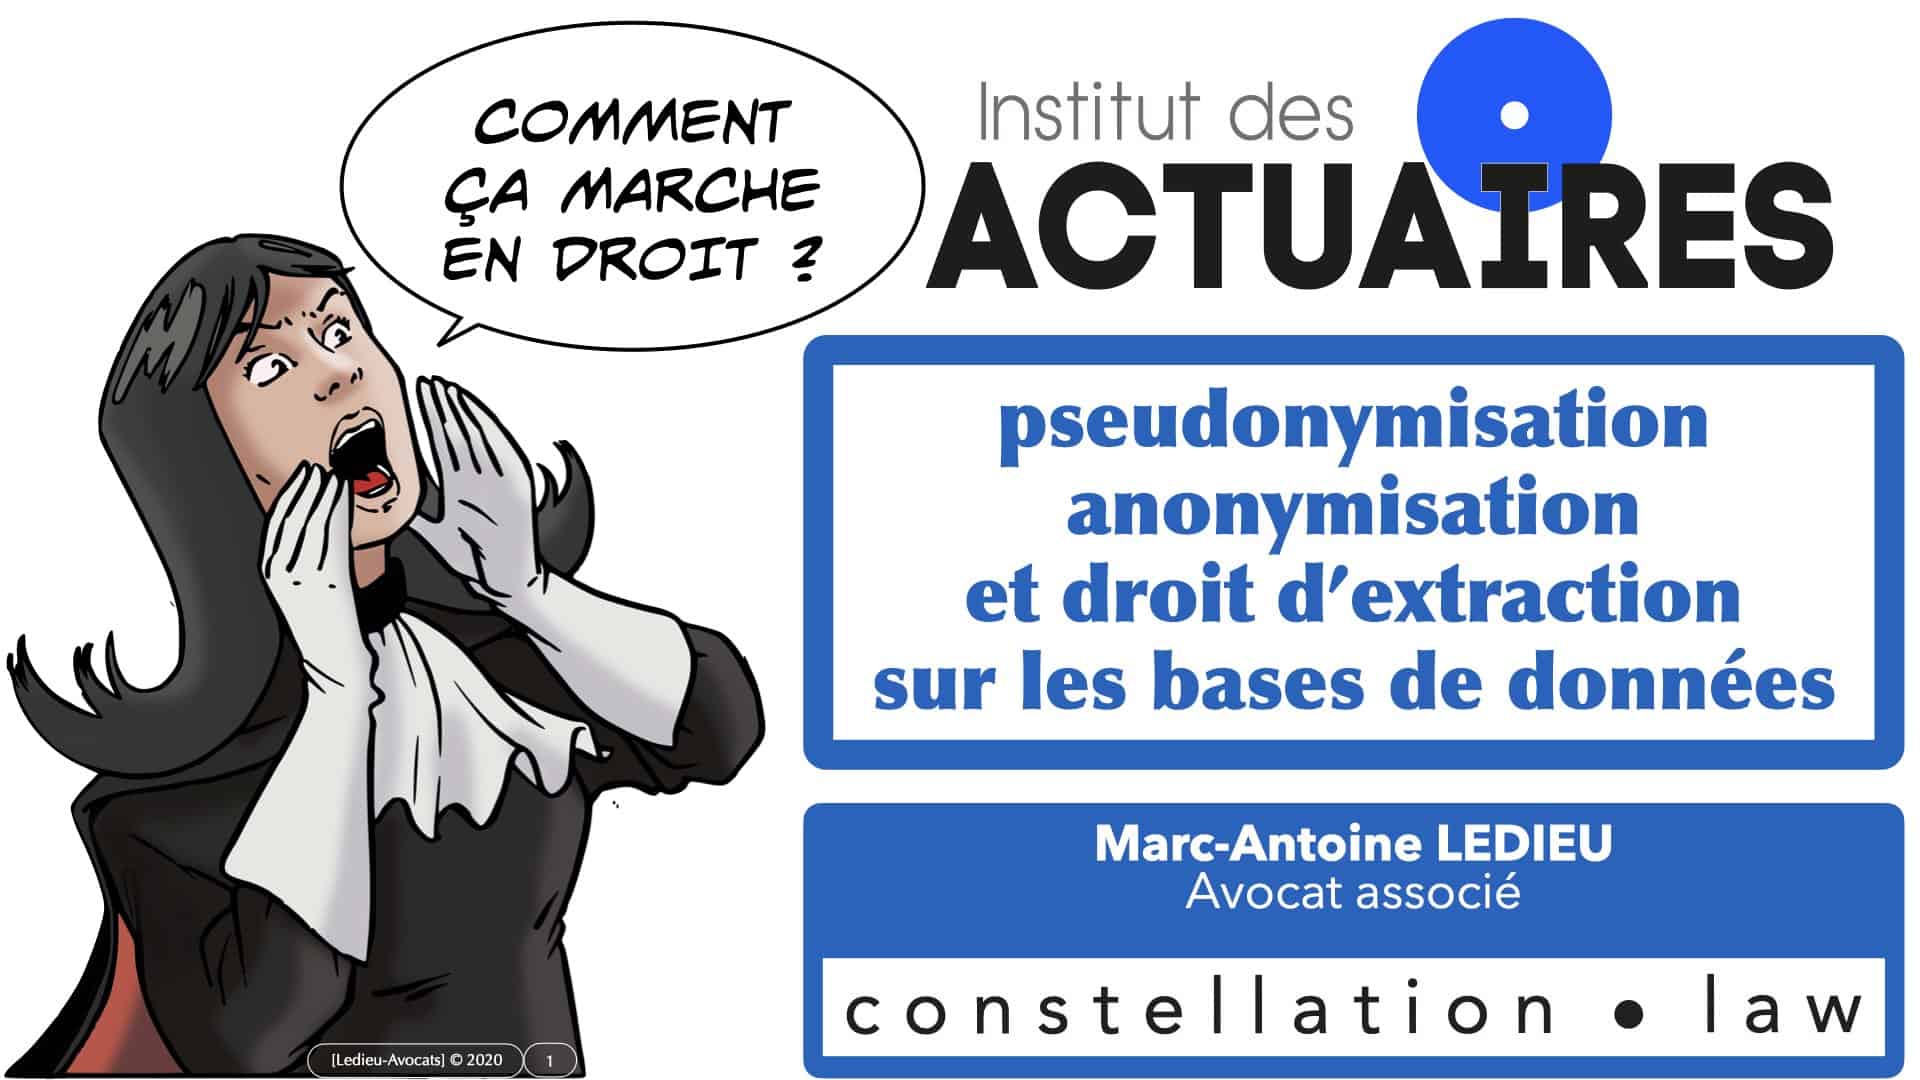 pseudonymisation données ACTUAIRES *16:9* © Ledieu-Avocats 06-11-2020.001